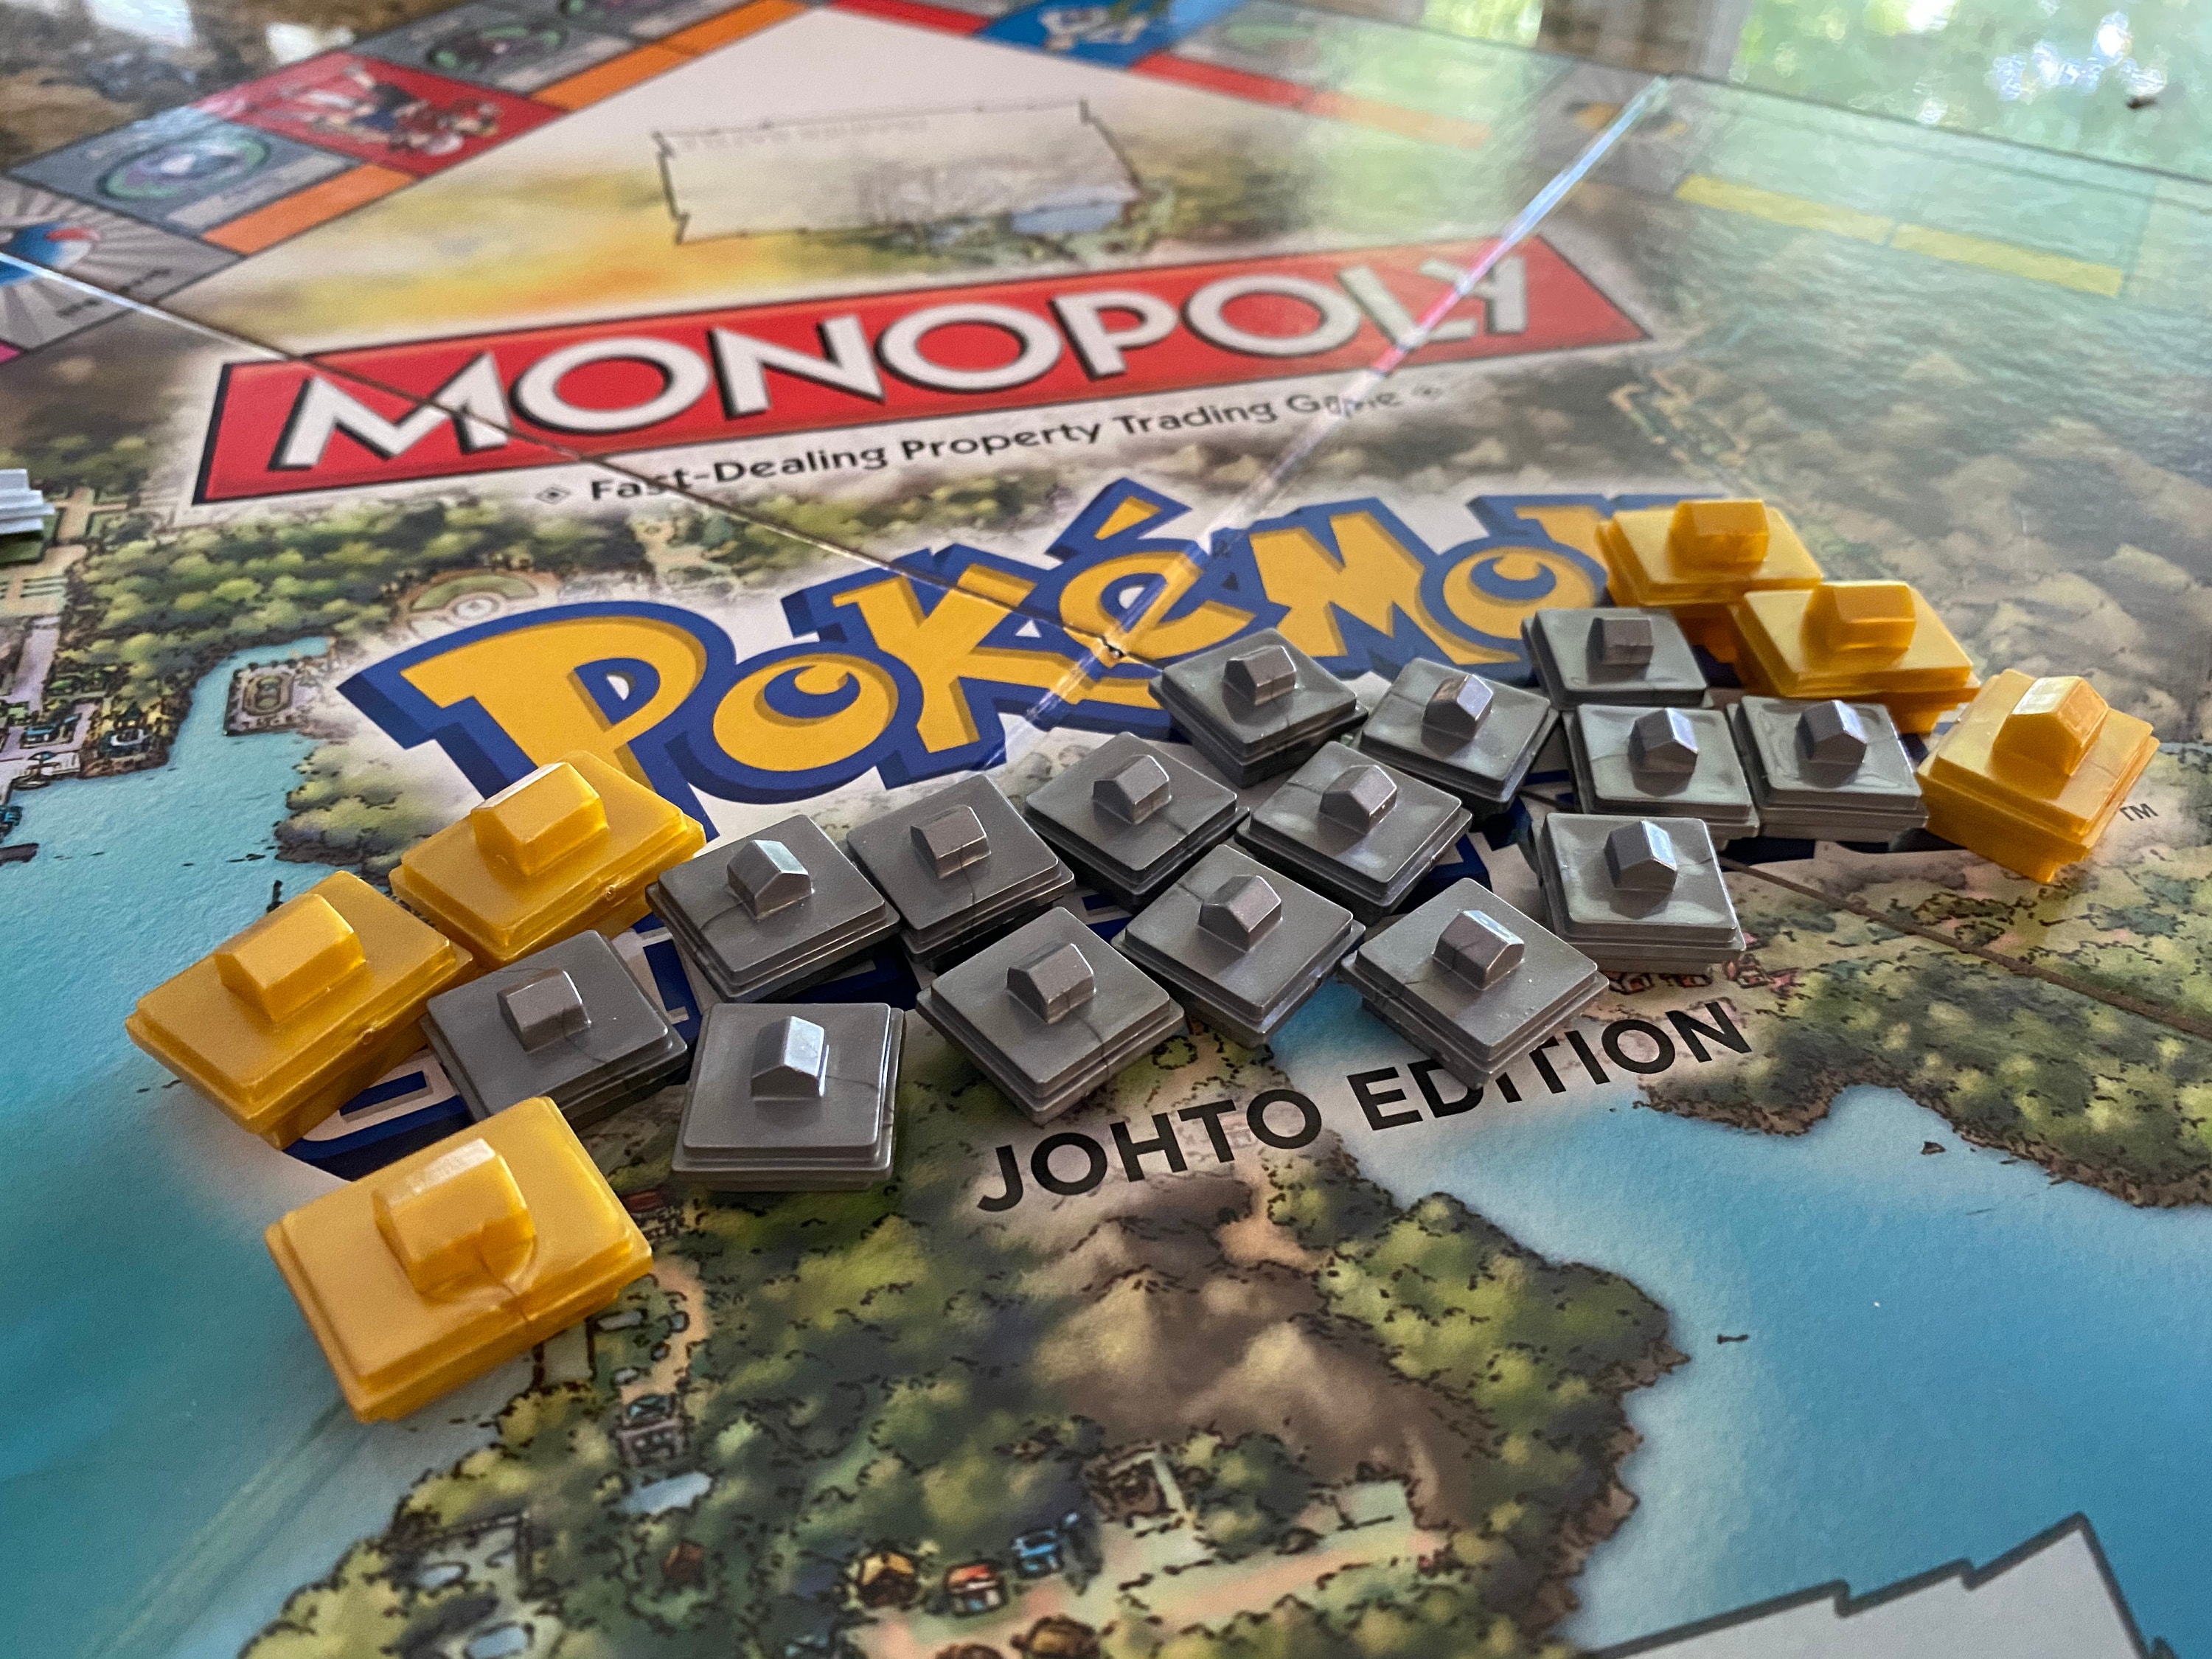 Monopoly Game: Pokémon Johto Edition